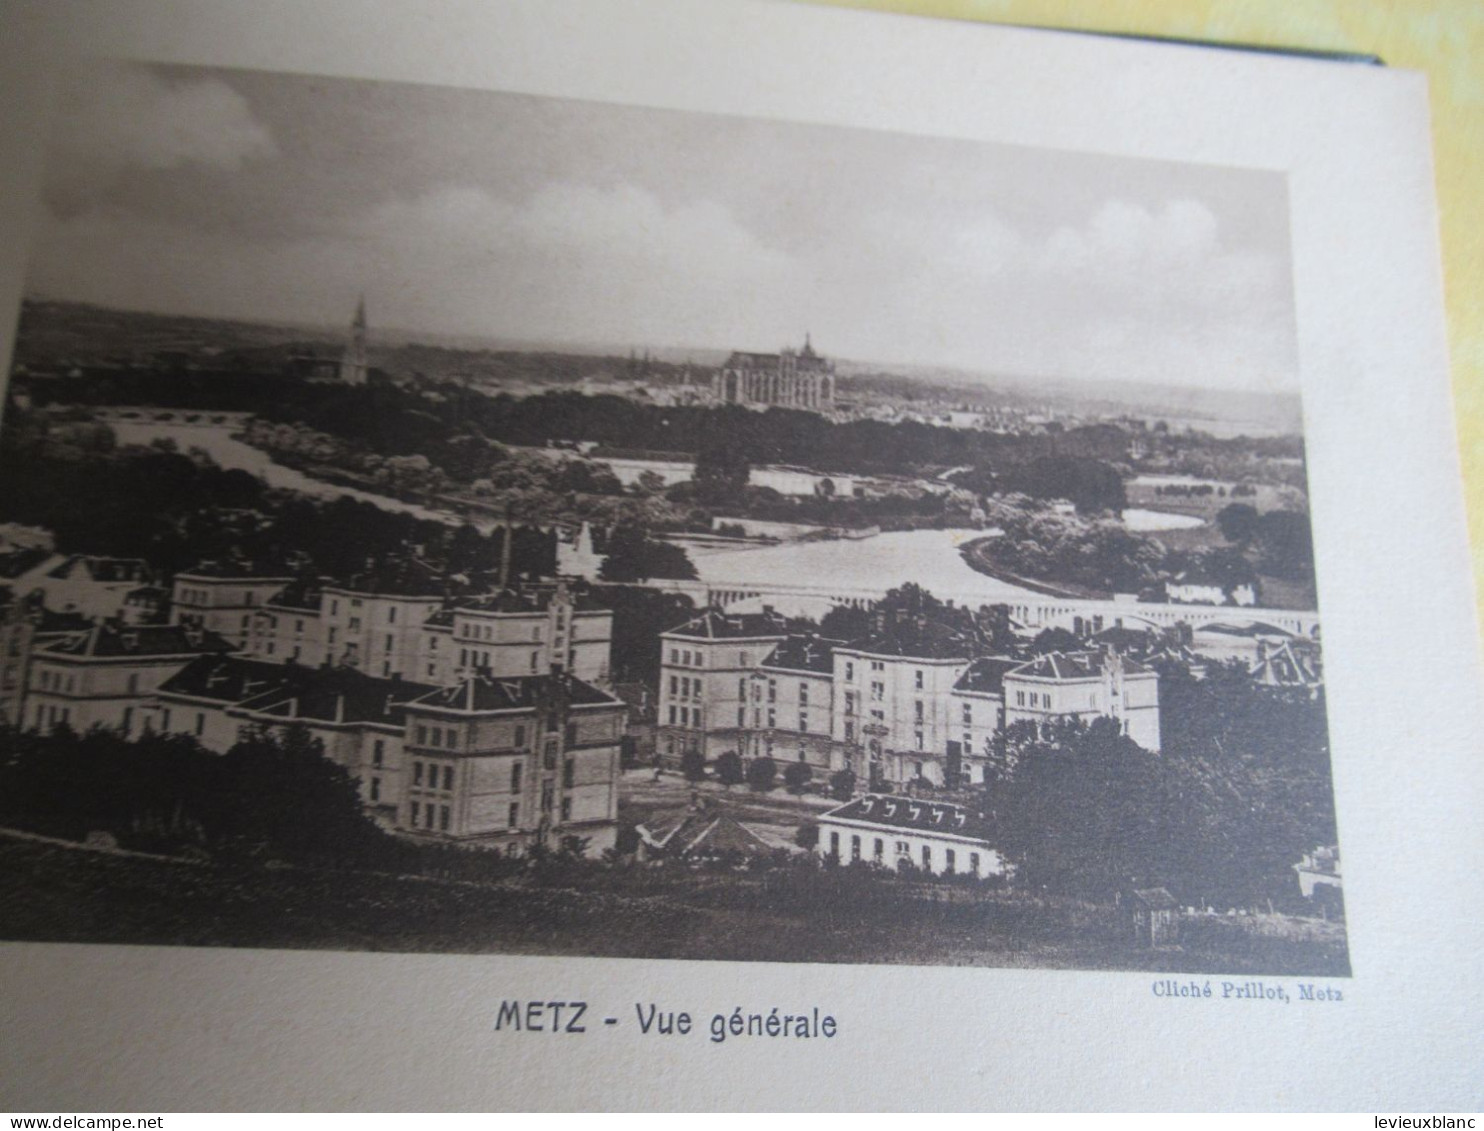 Carnet Souvenir 17 Vues De METZ/offert Par La Maison FABRE/grainetier/METZ (Moselle) /rue Mazelle/vers  1920-30   PGC552 - Dépliants Turistici